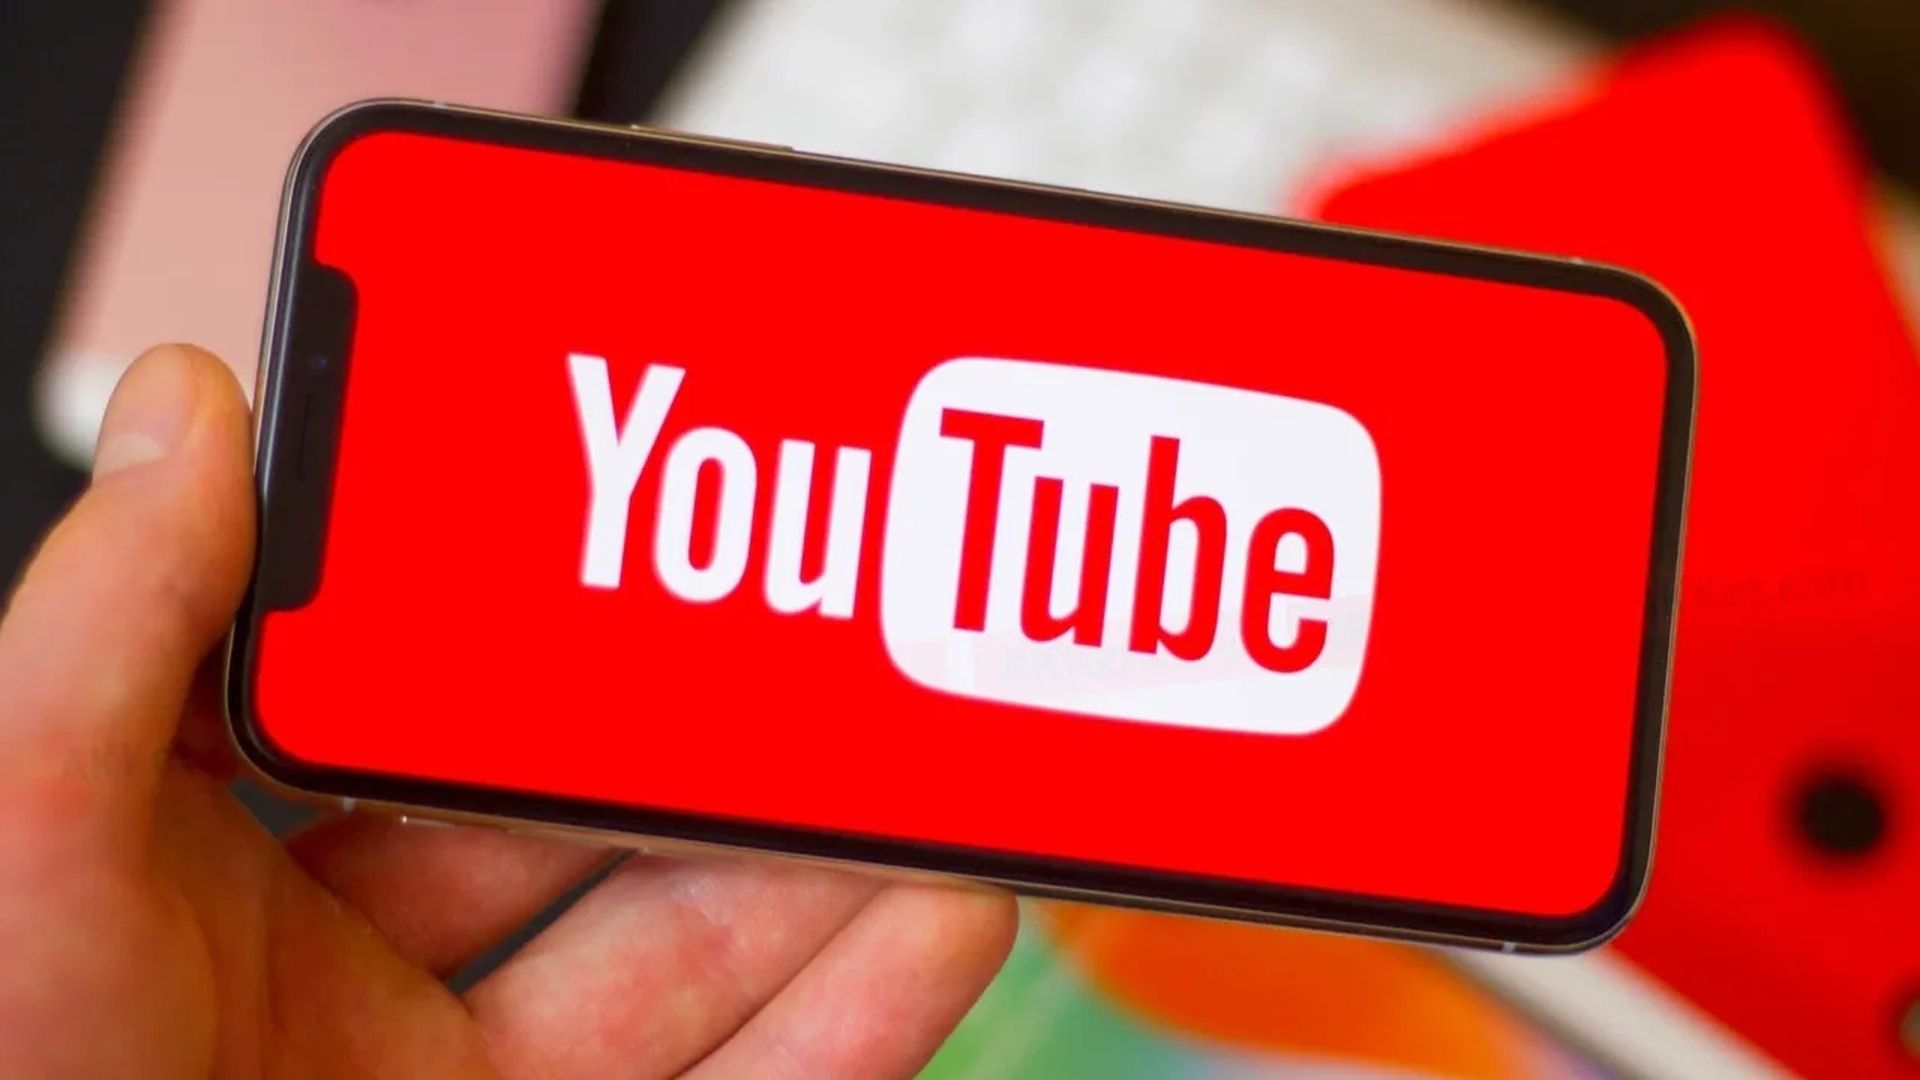 Faz exatamente 17 anos que Jawed Karim, um cara de 25 anos, publicou o primeiro vídeo do YouTube, marcando o início de uma plataforma que desde então se tornou a fonte mais popular de streaming de vídeo.